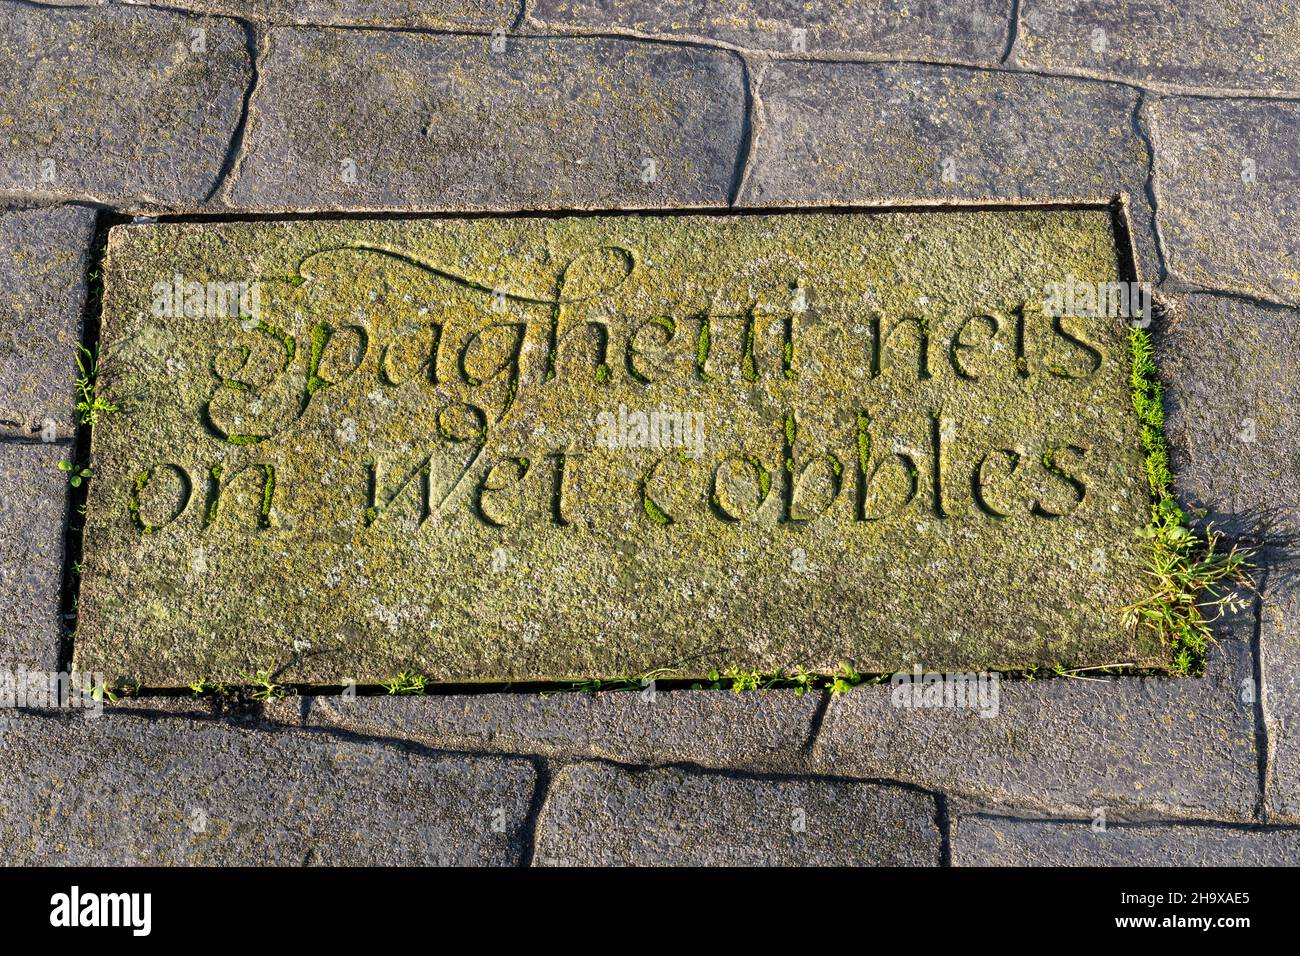 Dalle de pierre sculptée dans le mur du port de Maryport avec les mots « filets de paghetti sur les pavés humides », Cumbria, Angleterre, Royaume-Uni Banque D'Images